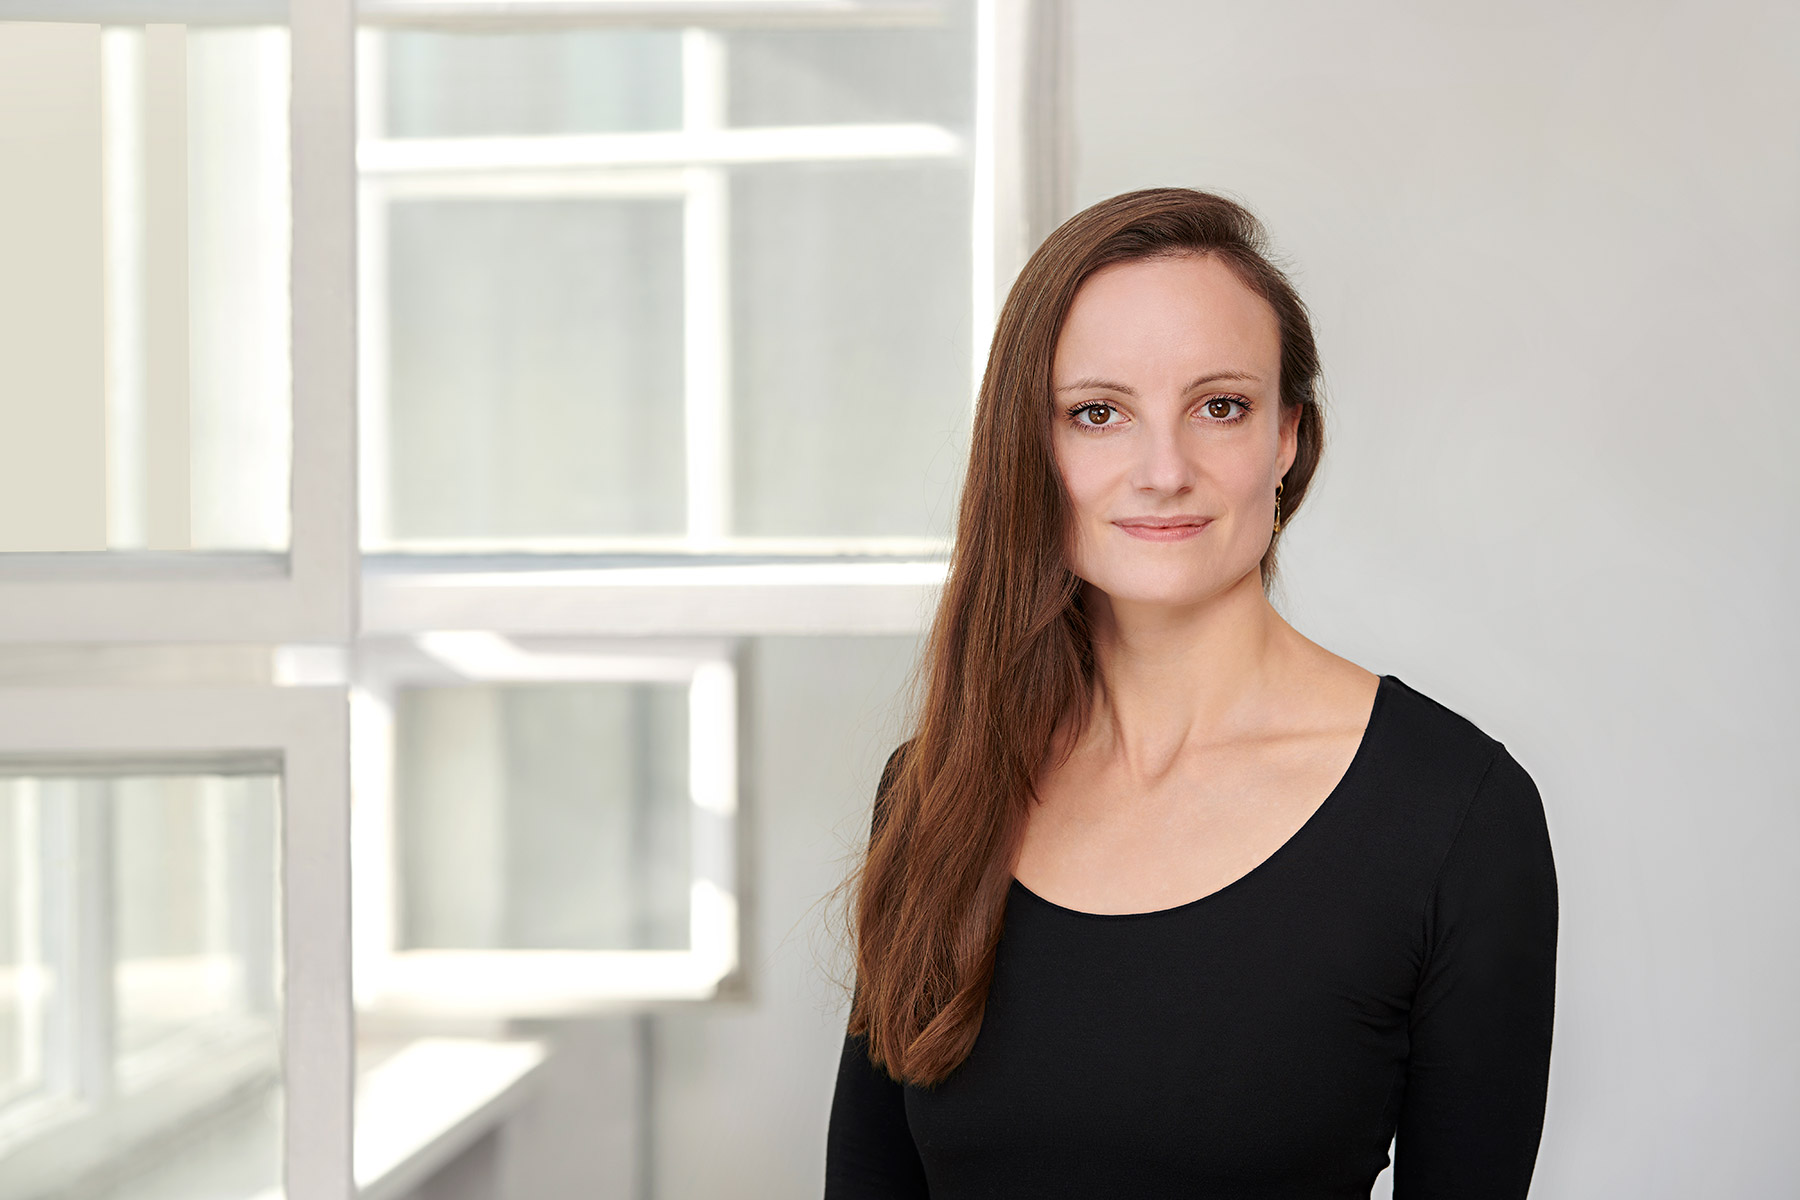 Portraitbild von Anna Stachow vor weißem Hintergrund und seitlich geöffneten Altbaufenstern